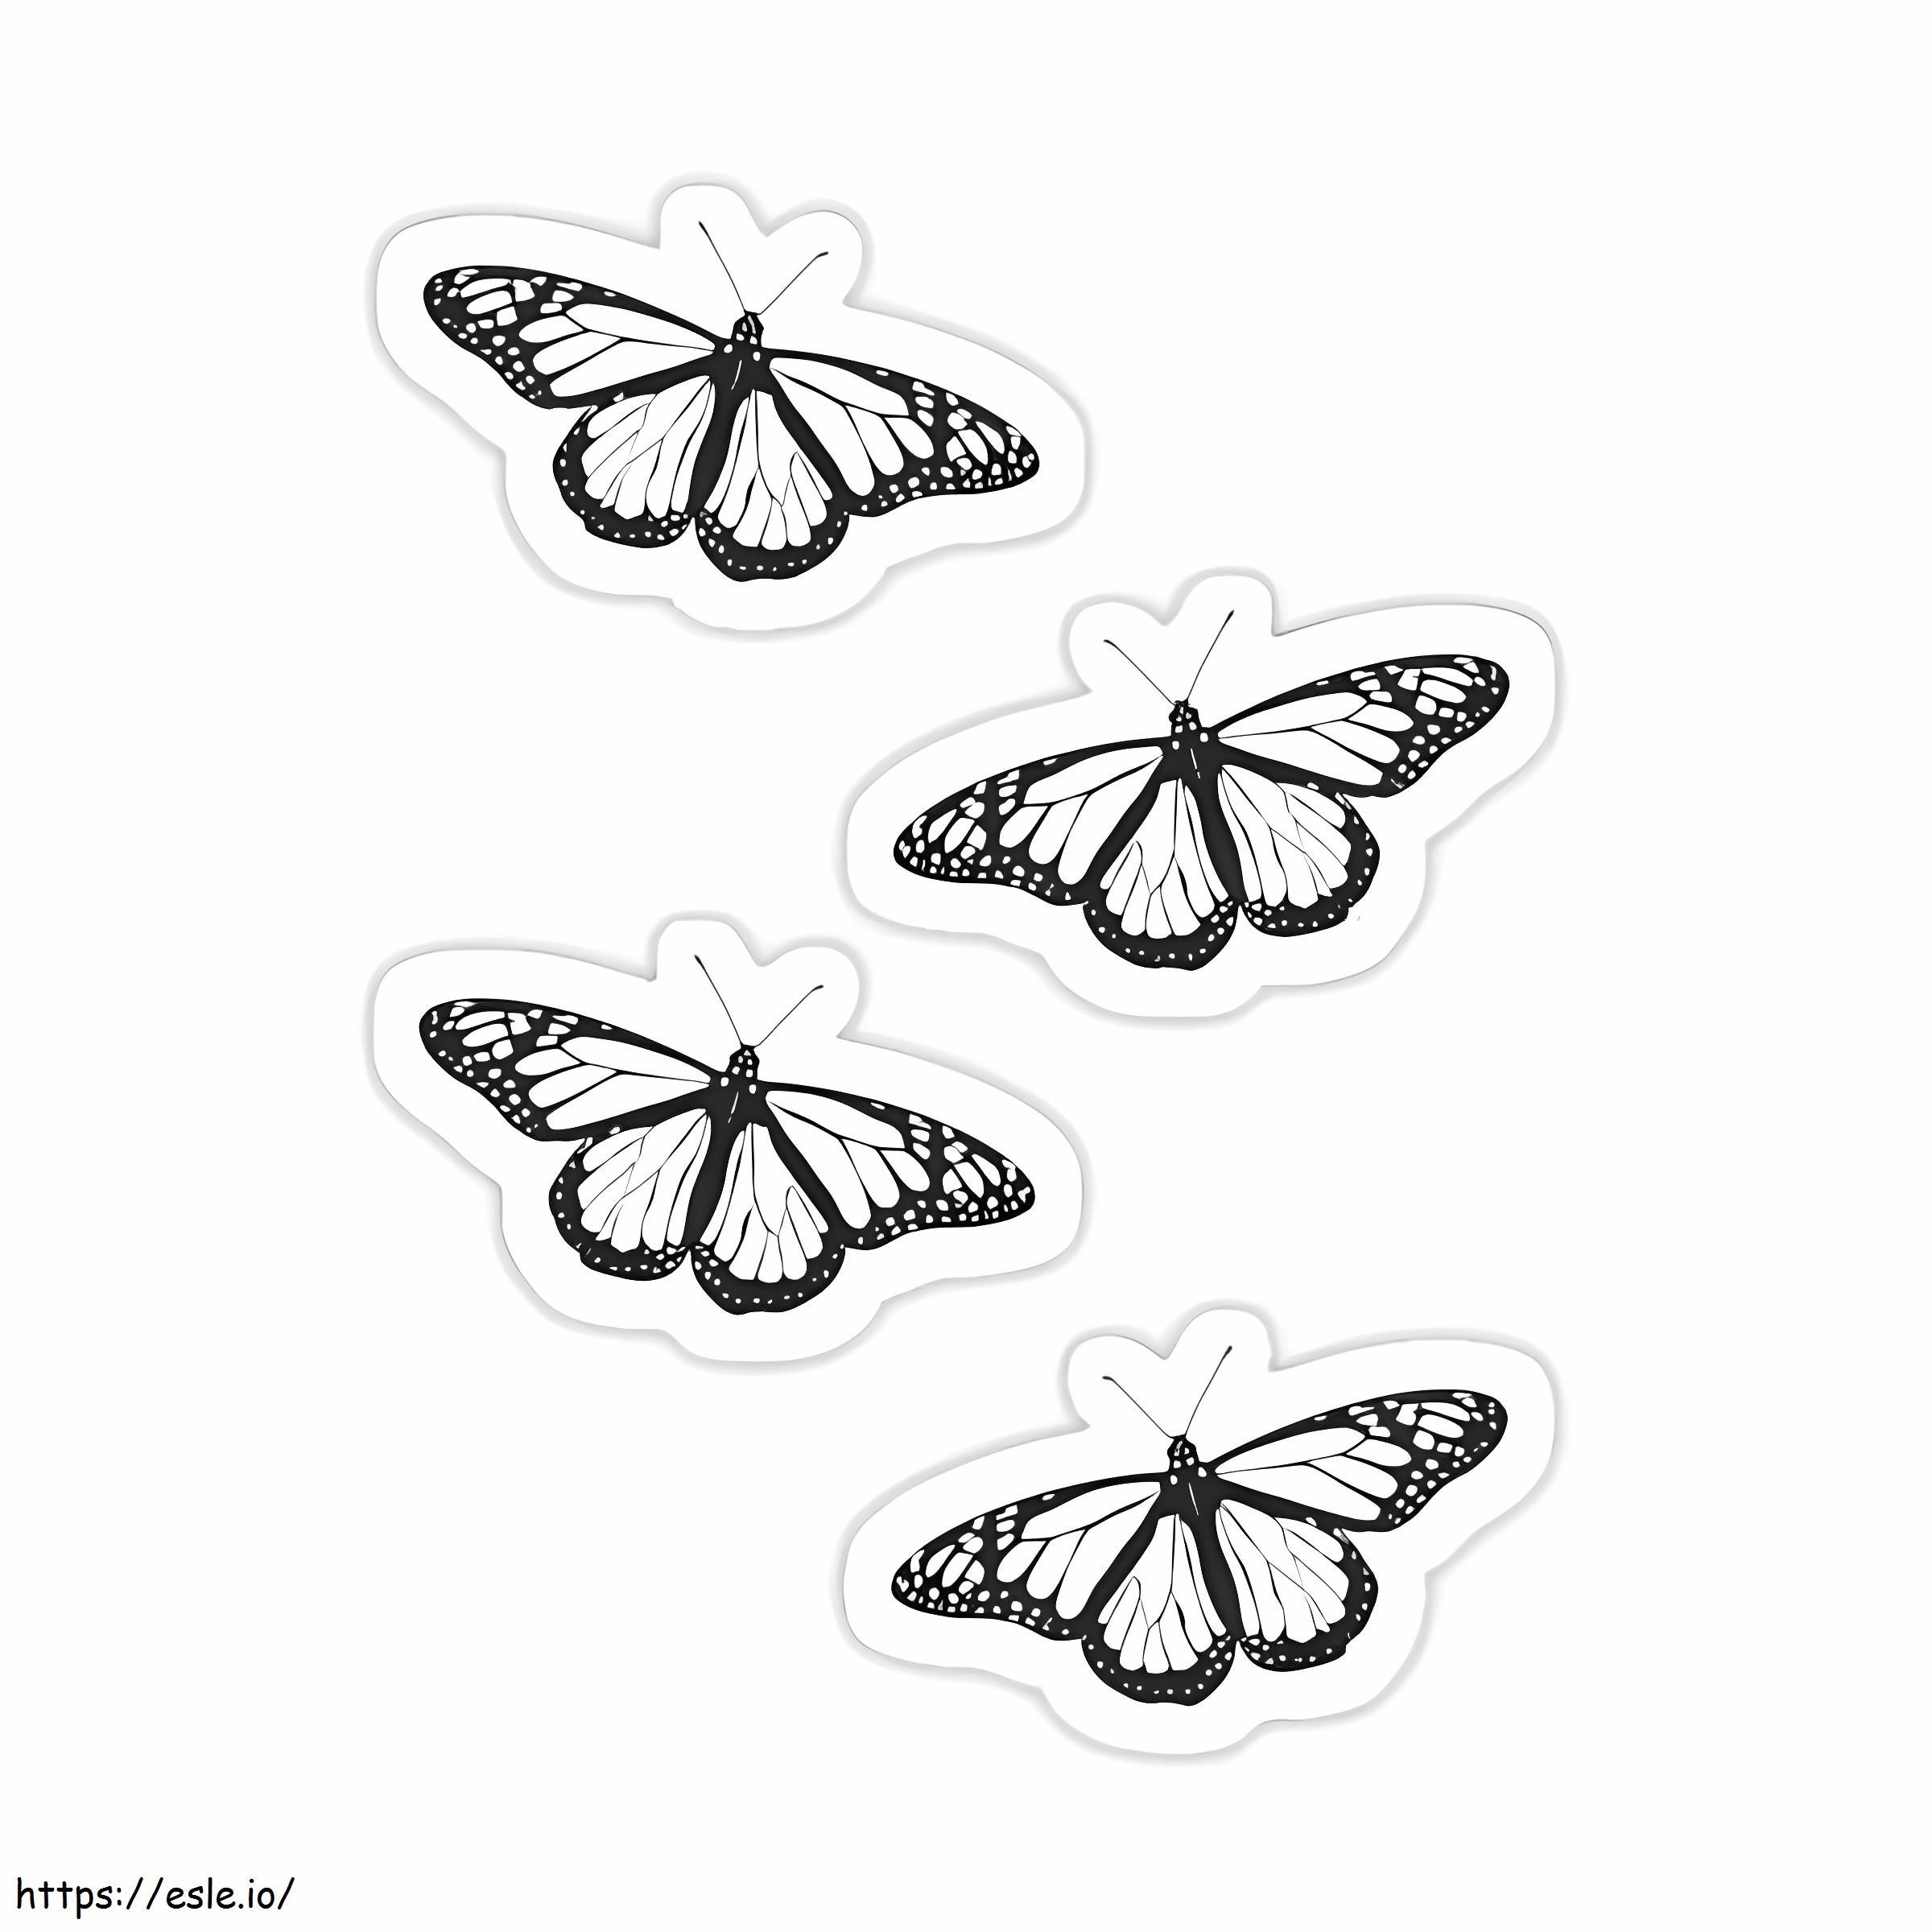 Coloriage Autocollants Papillon à imprimer dessin